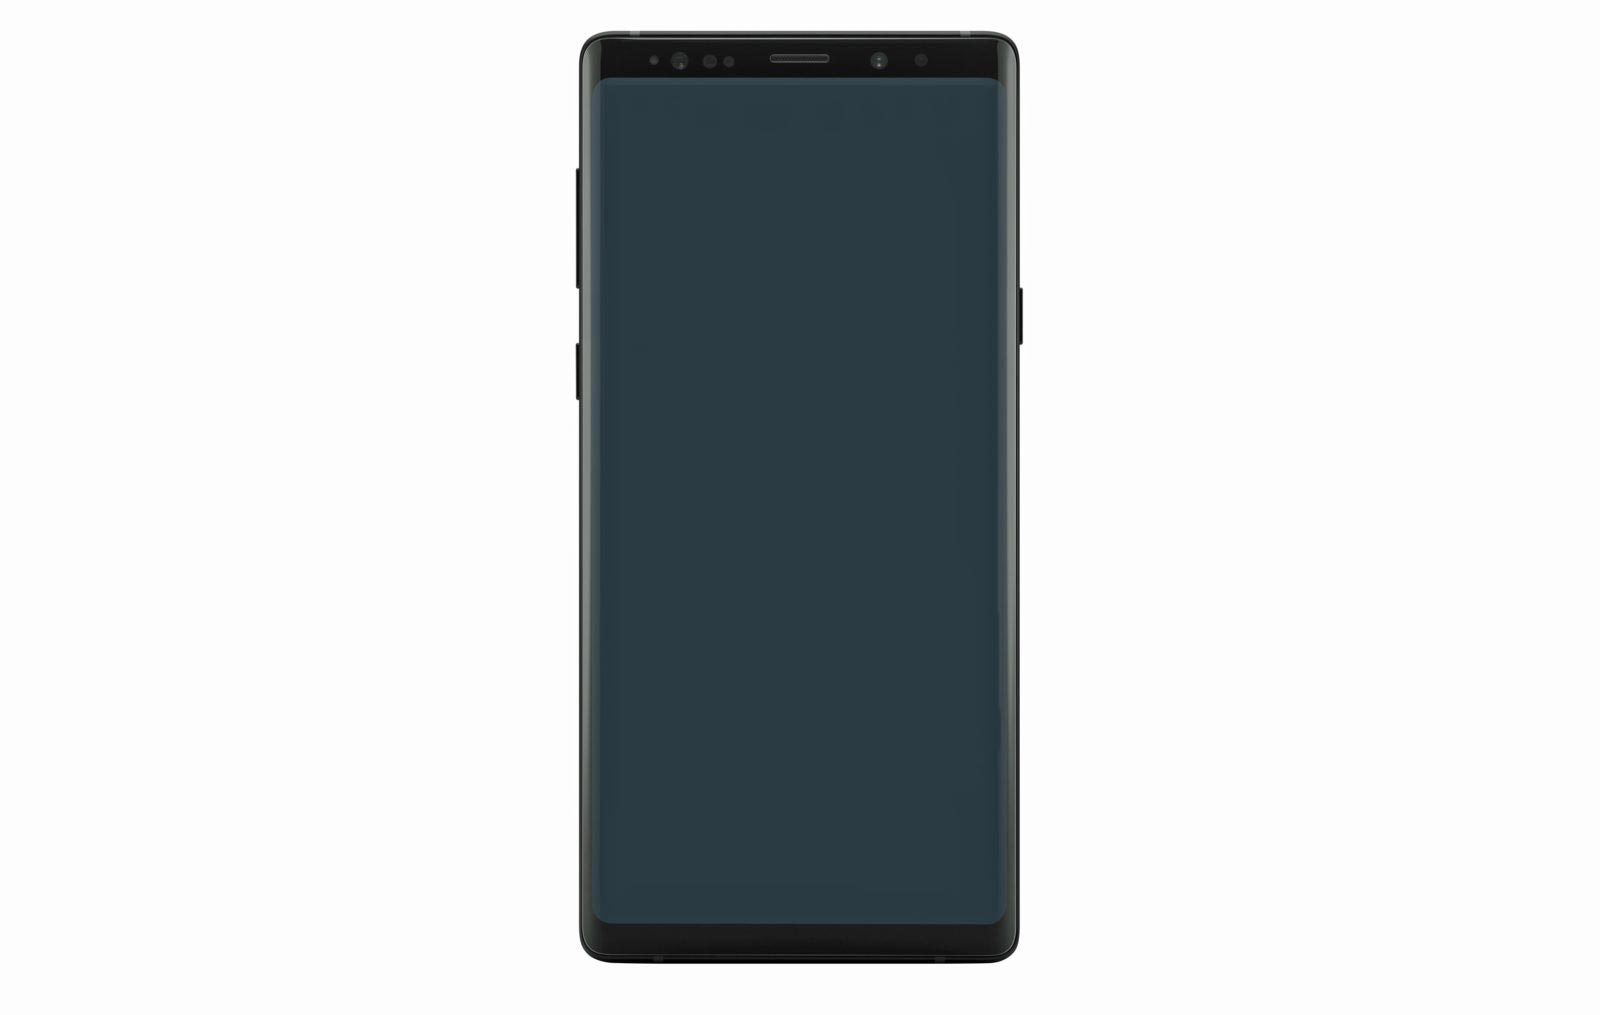 Samsung Galaxy Note 9 render